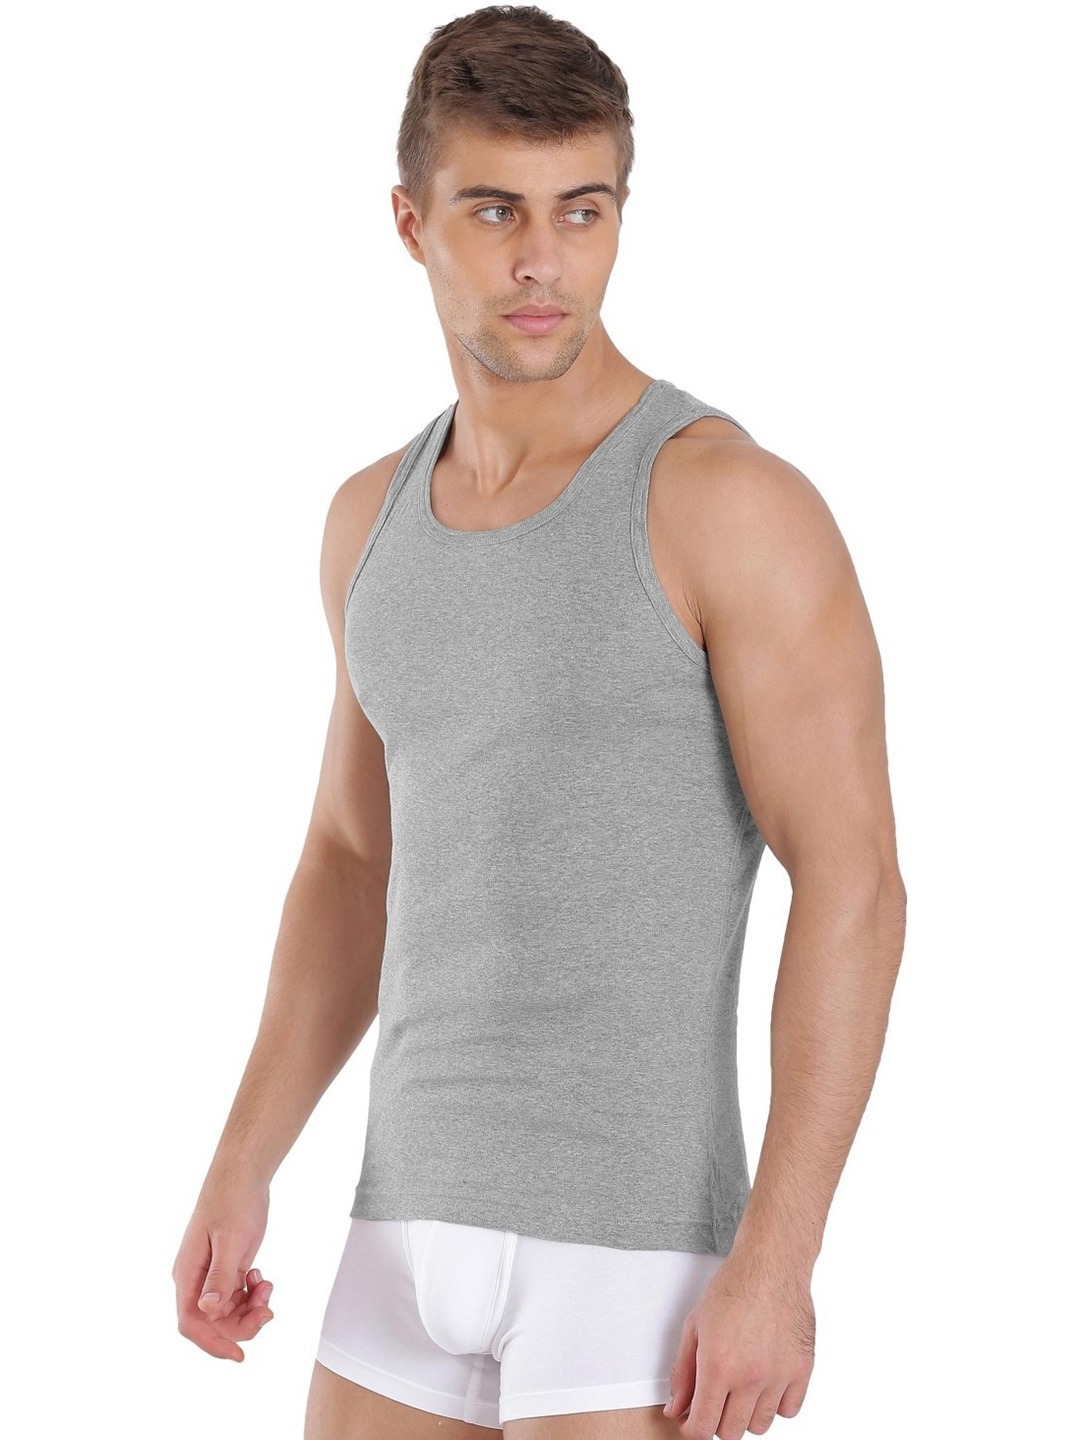 Clothing Innerwear Vests | Jockey Men Grey Melange Solid Innerwear Vest FP04-0105 - ID01324